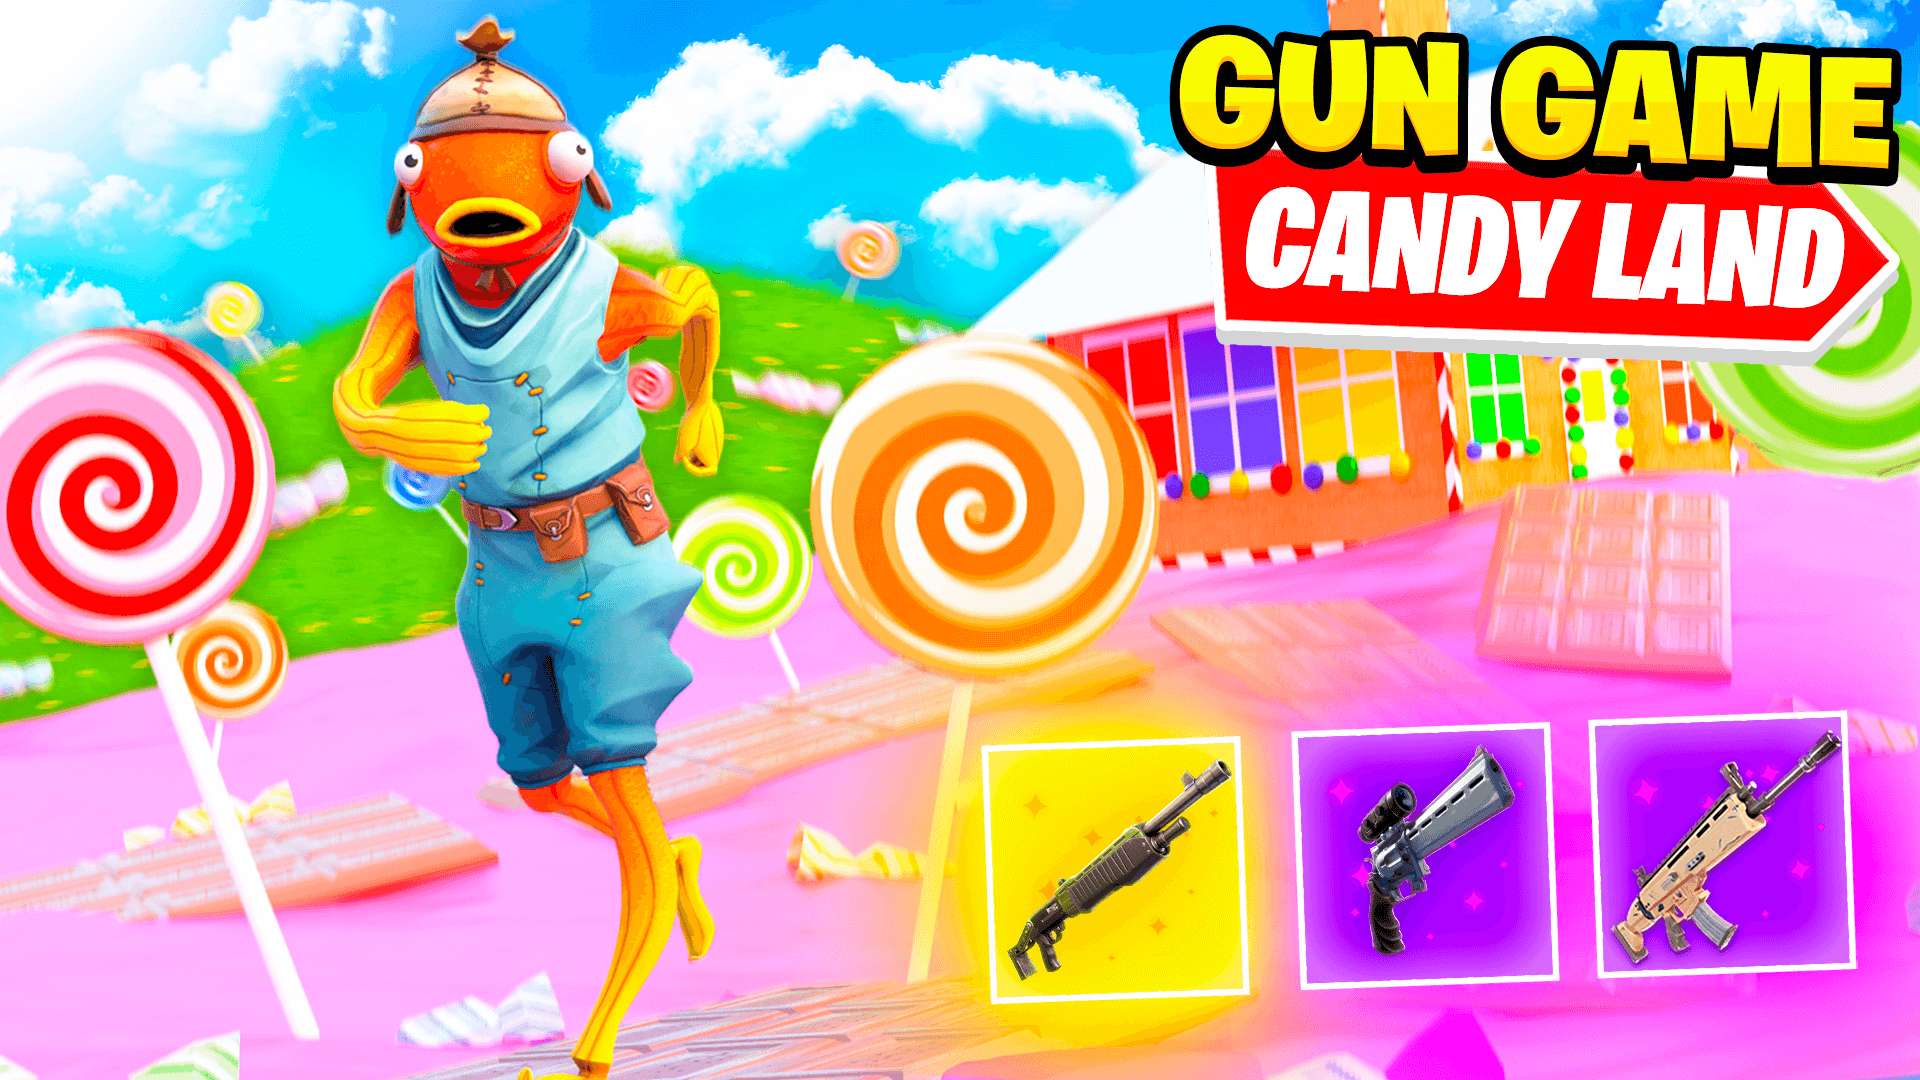 Candy Land GUN GAME